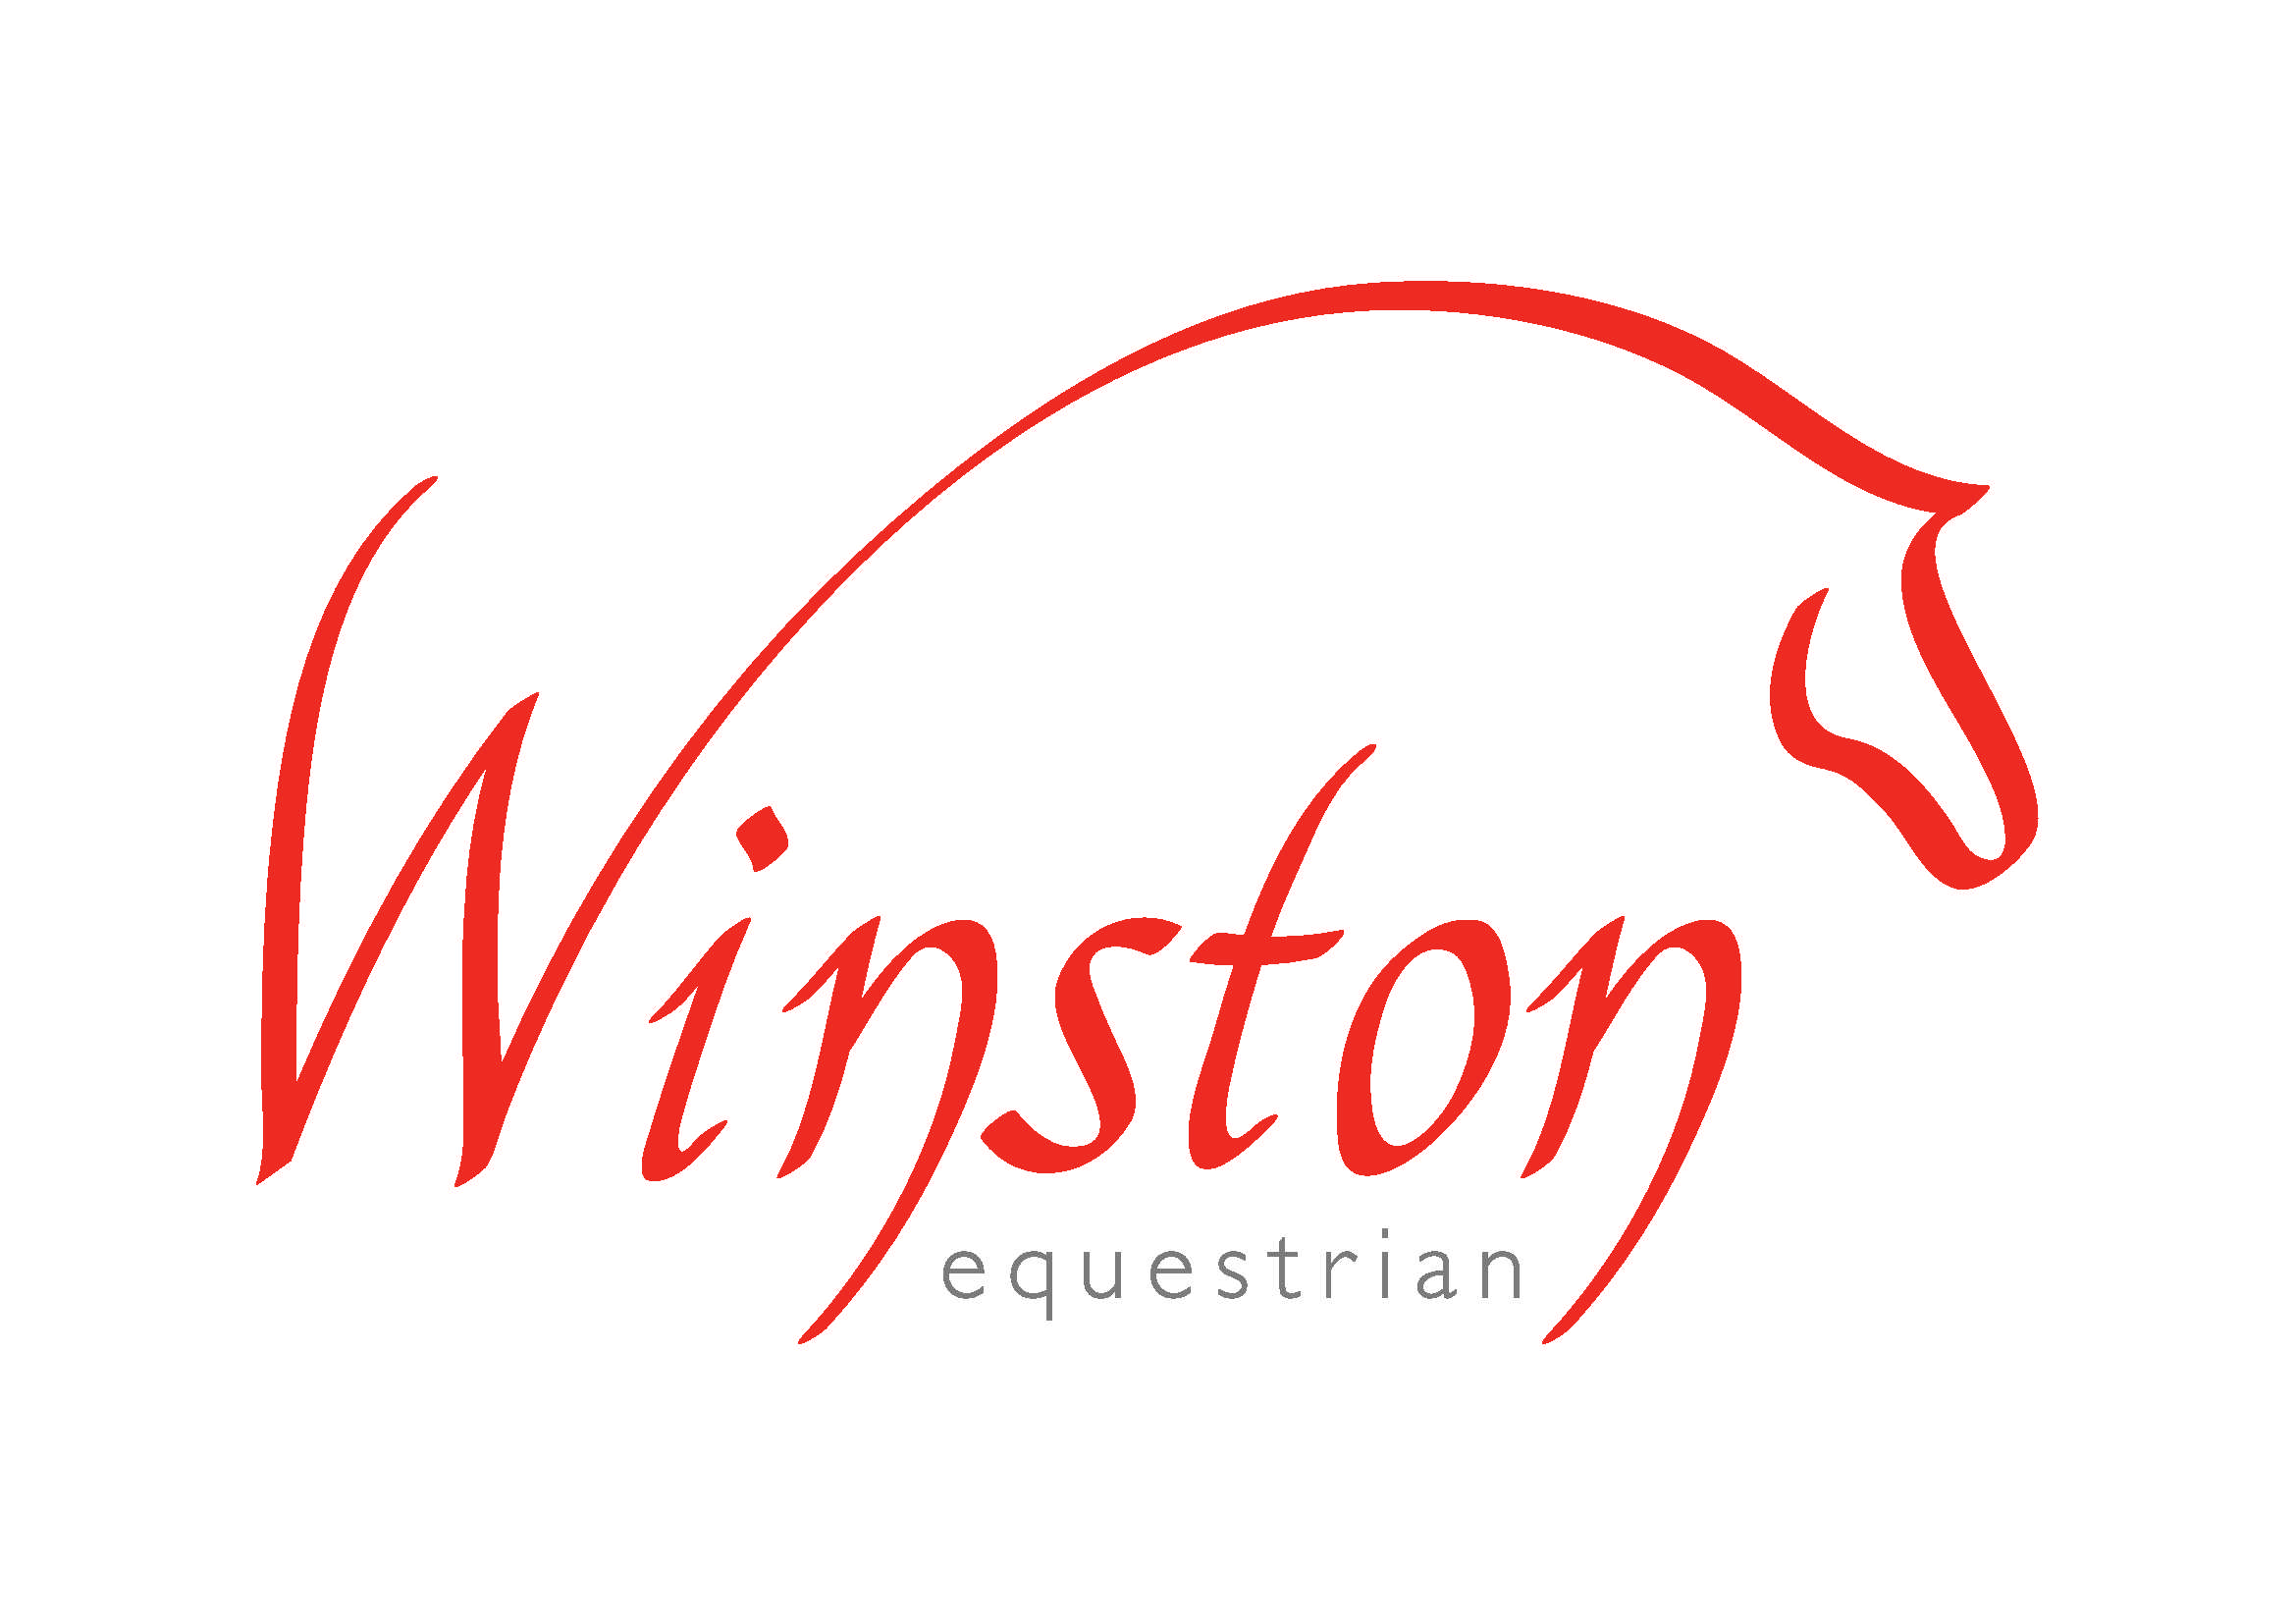 Winston equestrian